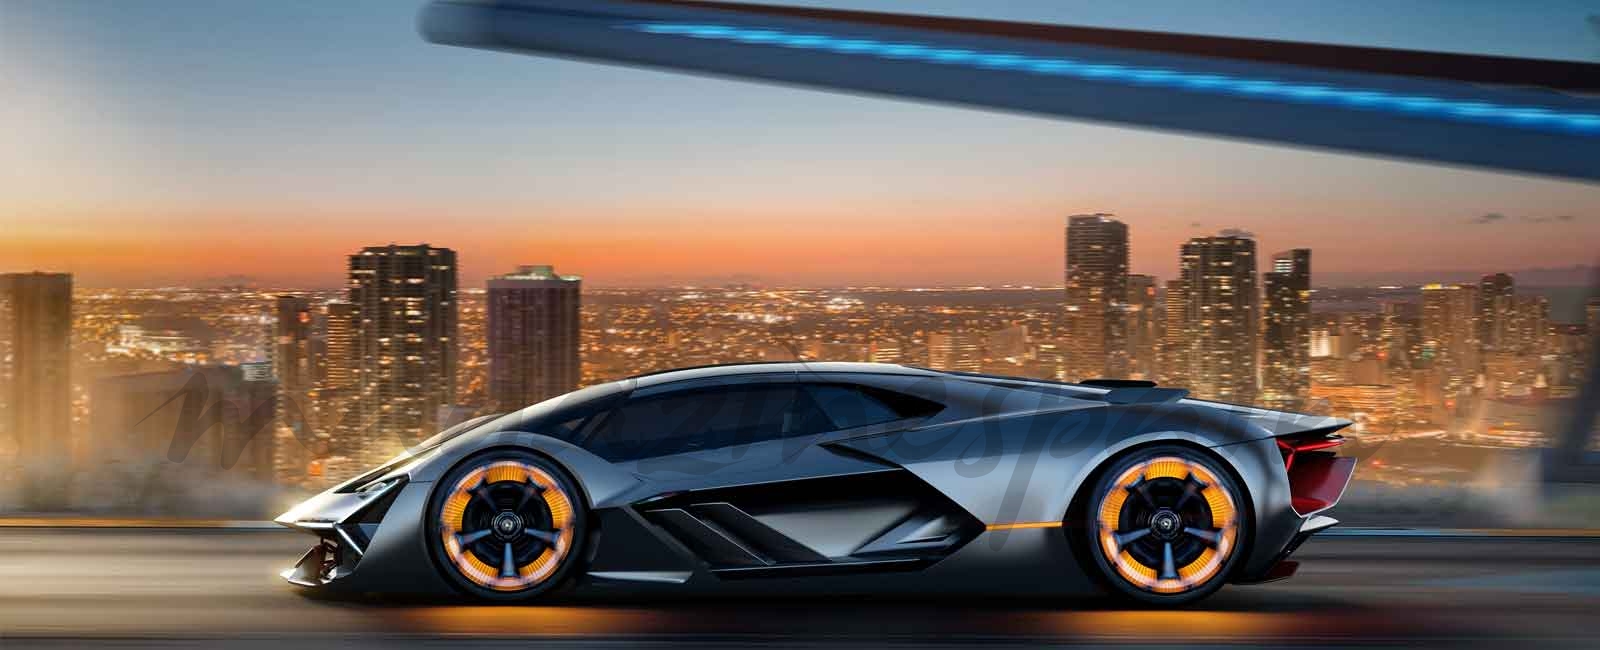 El Lamborghini Terzo Millennio, deportivo del futuro